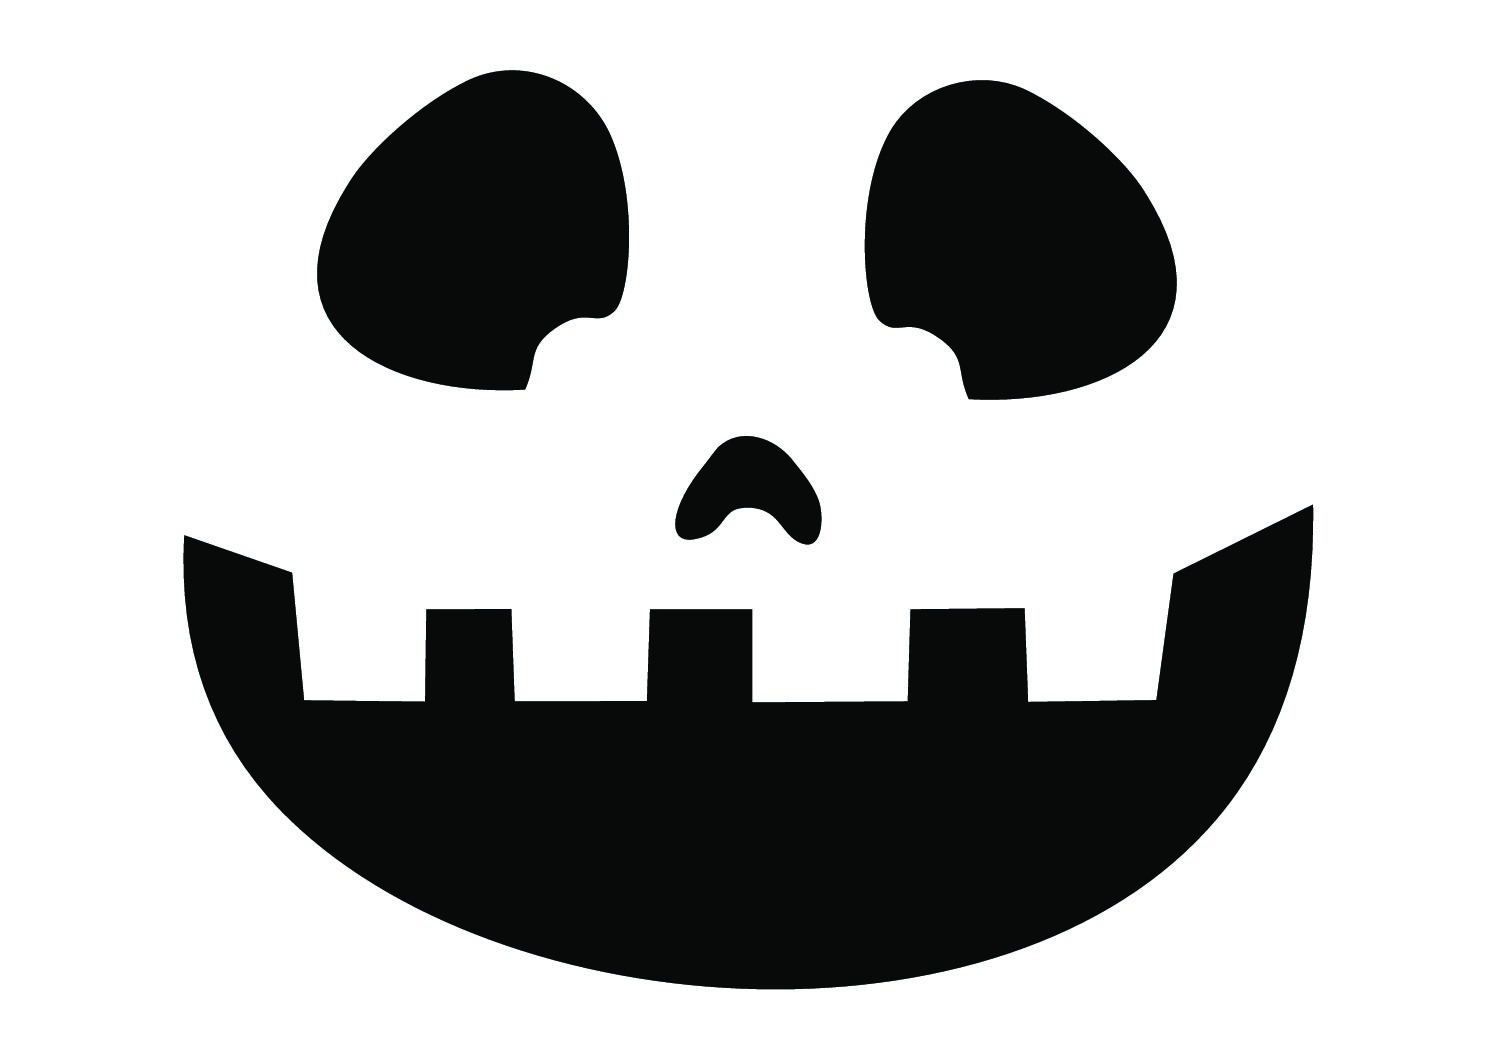 Vorlagen Für Halloween – 10 Kürbis Gesichter - Hobbyfuchs innen Halloween Gesichter Vorlagen